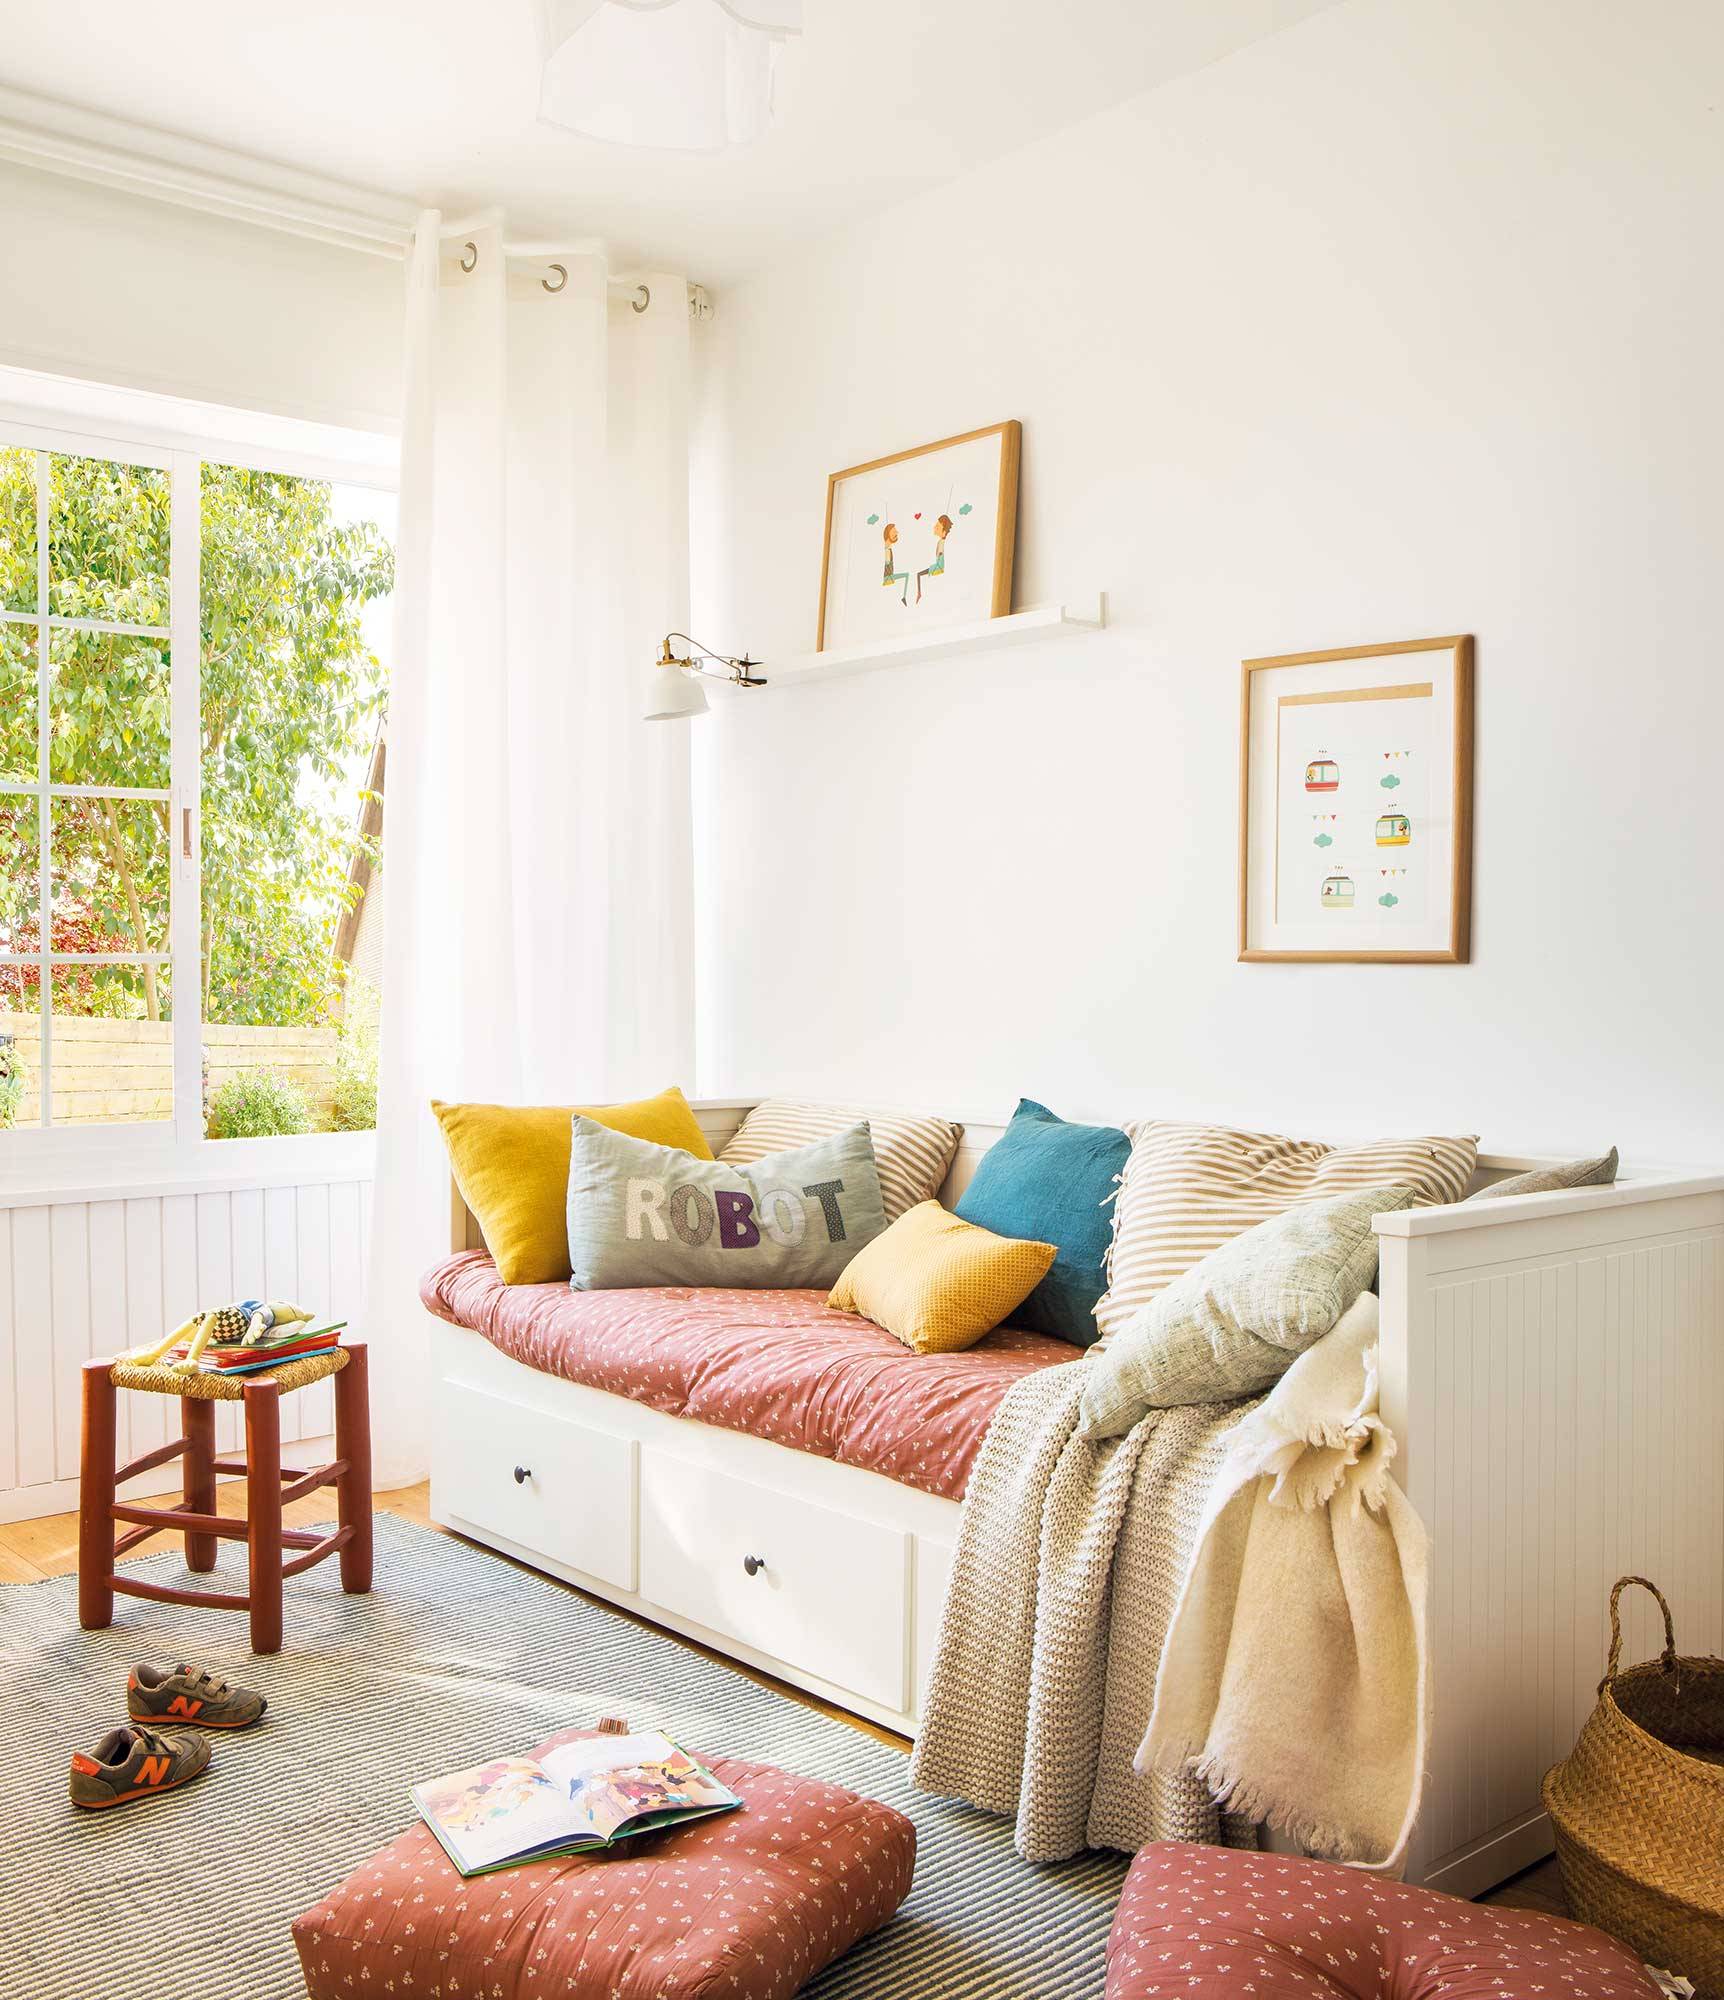 Dormitorio infantil con cama con cajones en blanco y nórdico a juego con los cojines.